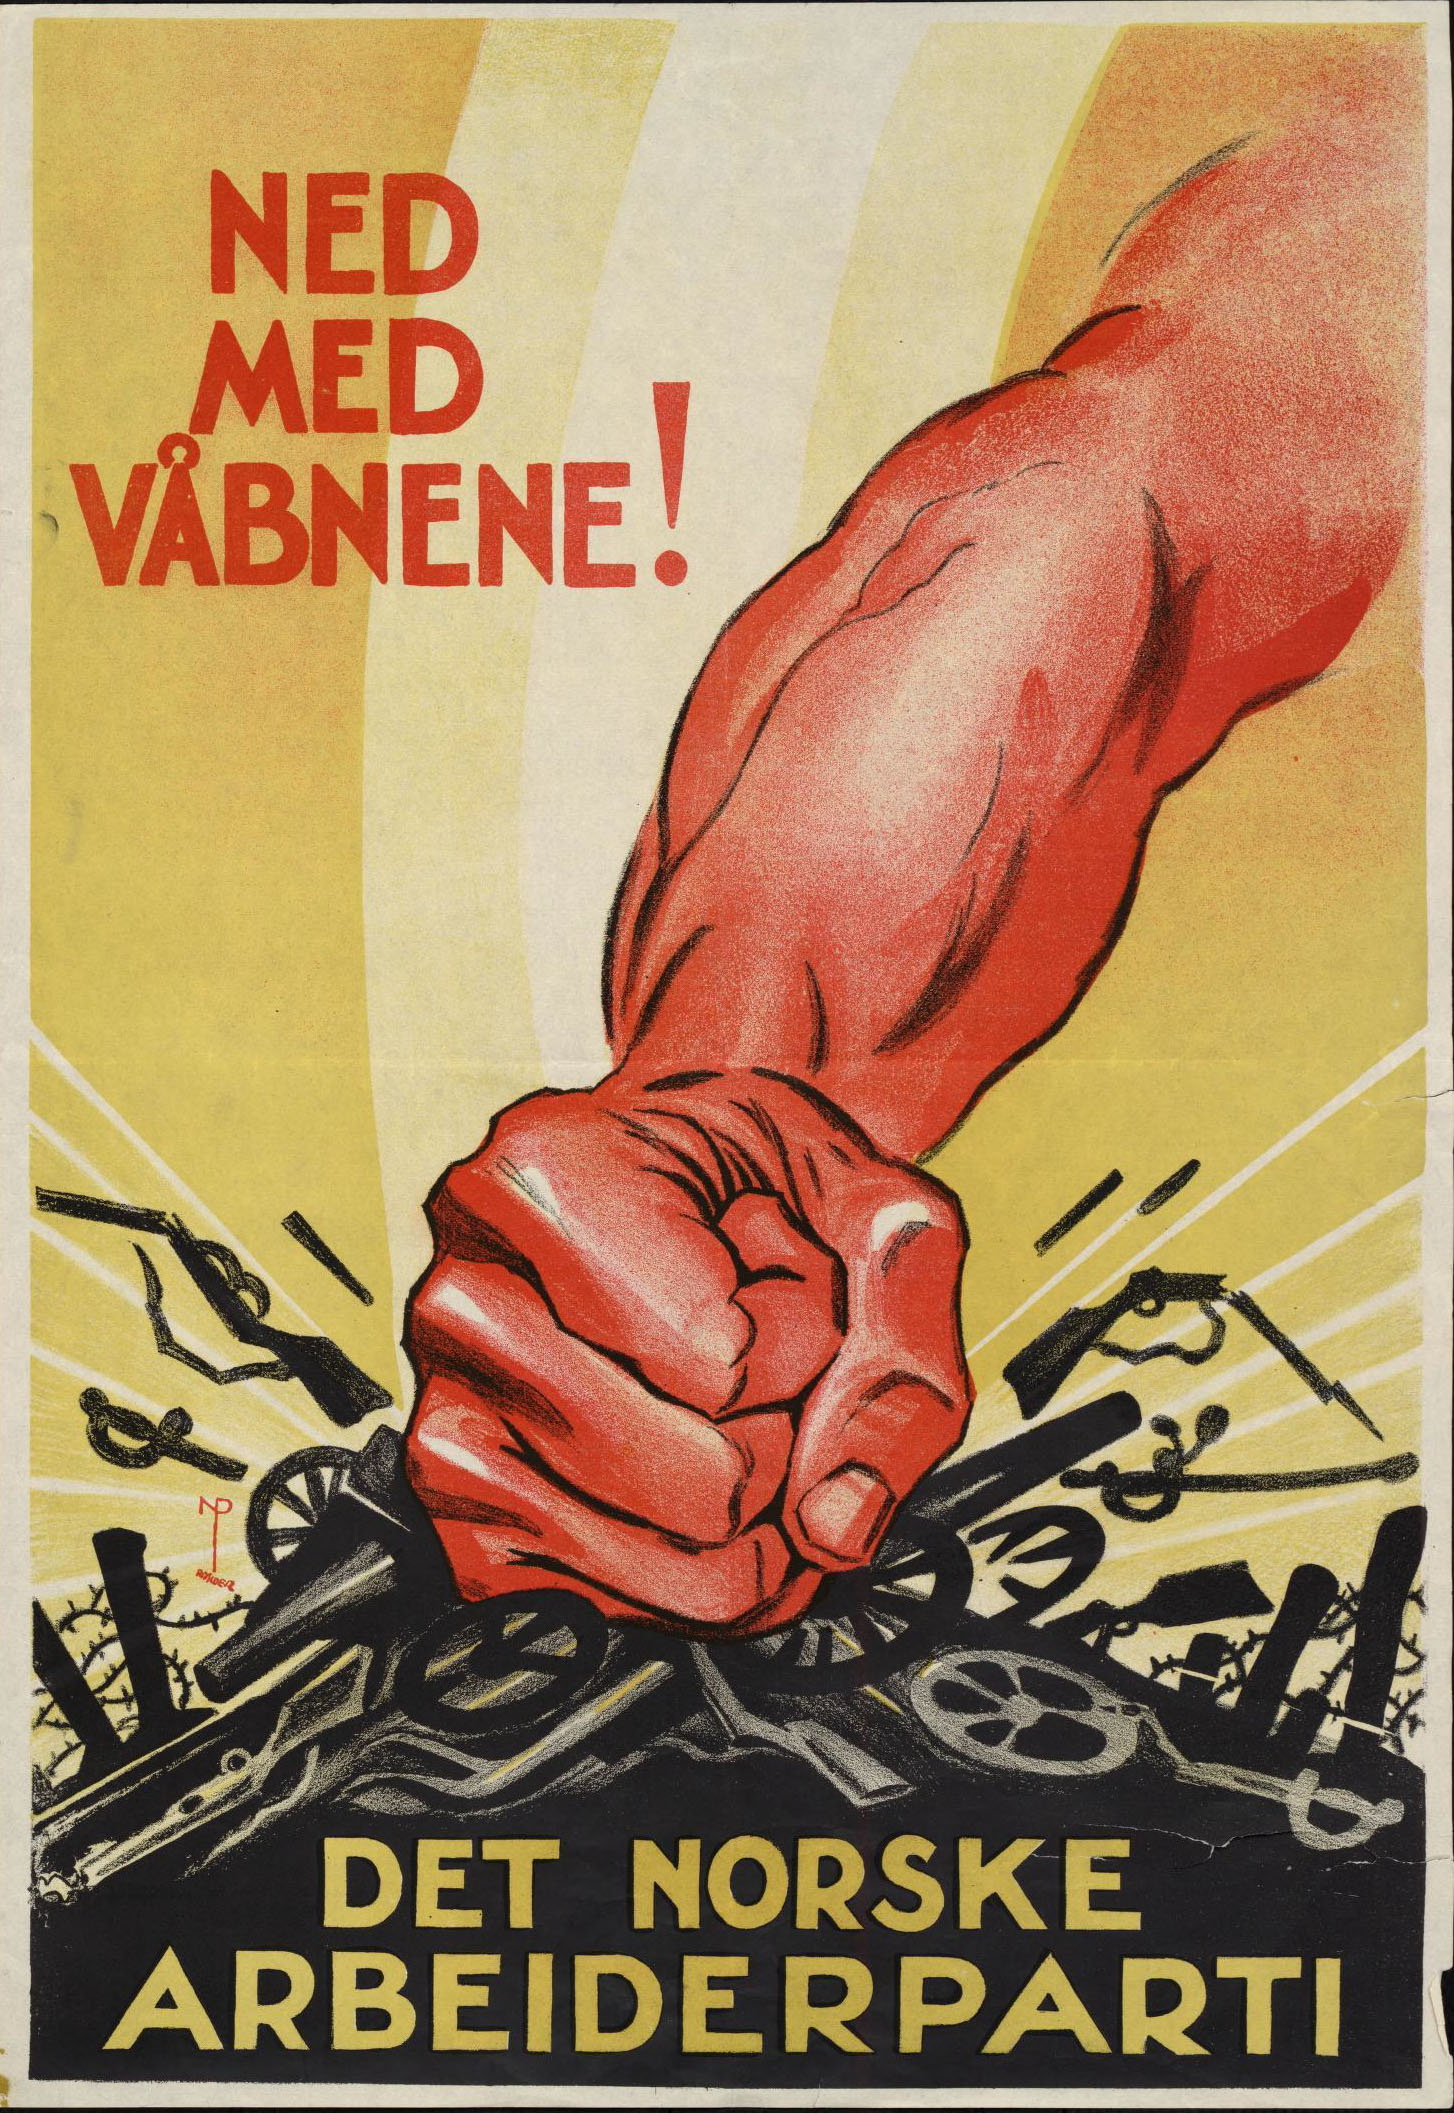 Plakat for Det norske arbeiderparti - Illustrasjon av knyttneve som knuser kanoner og gevær - Tekst: Ned med våbnene!